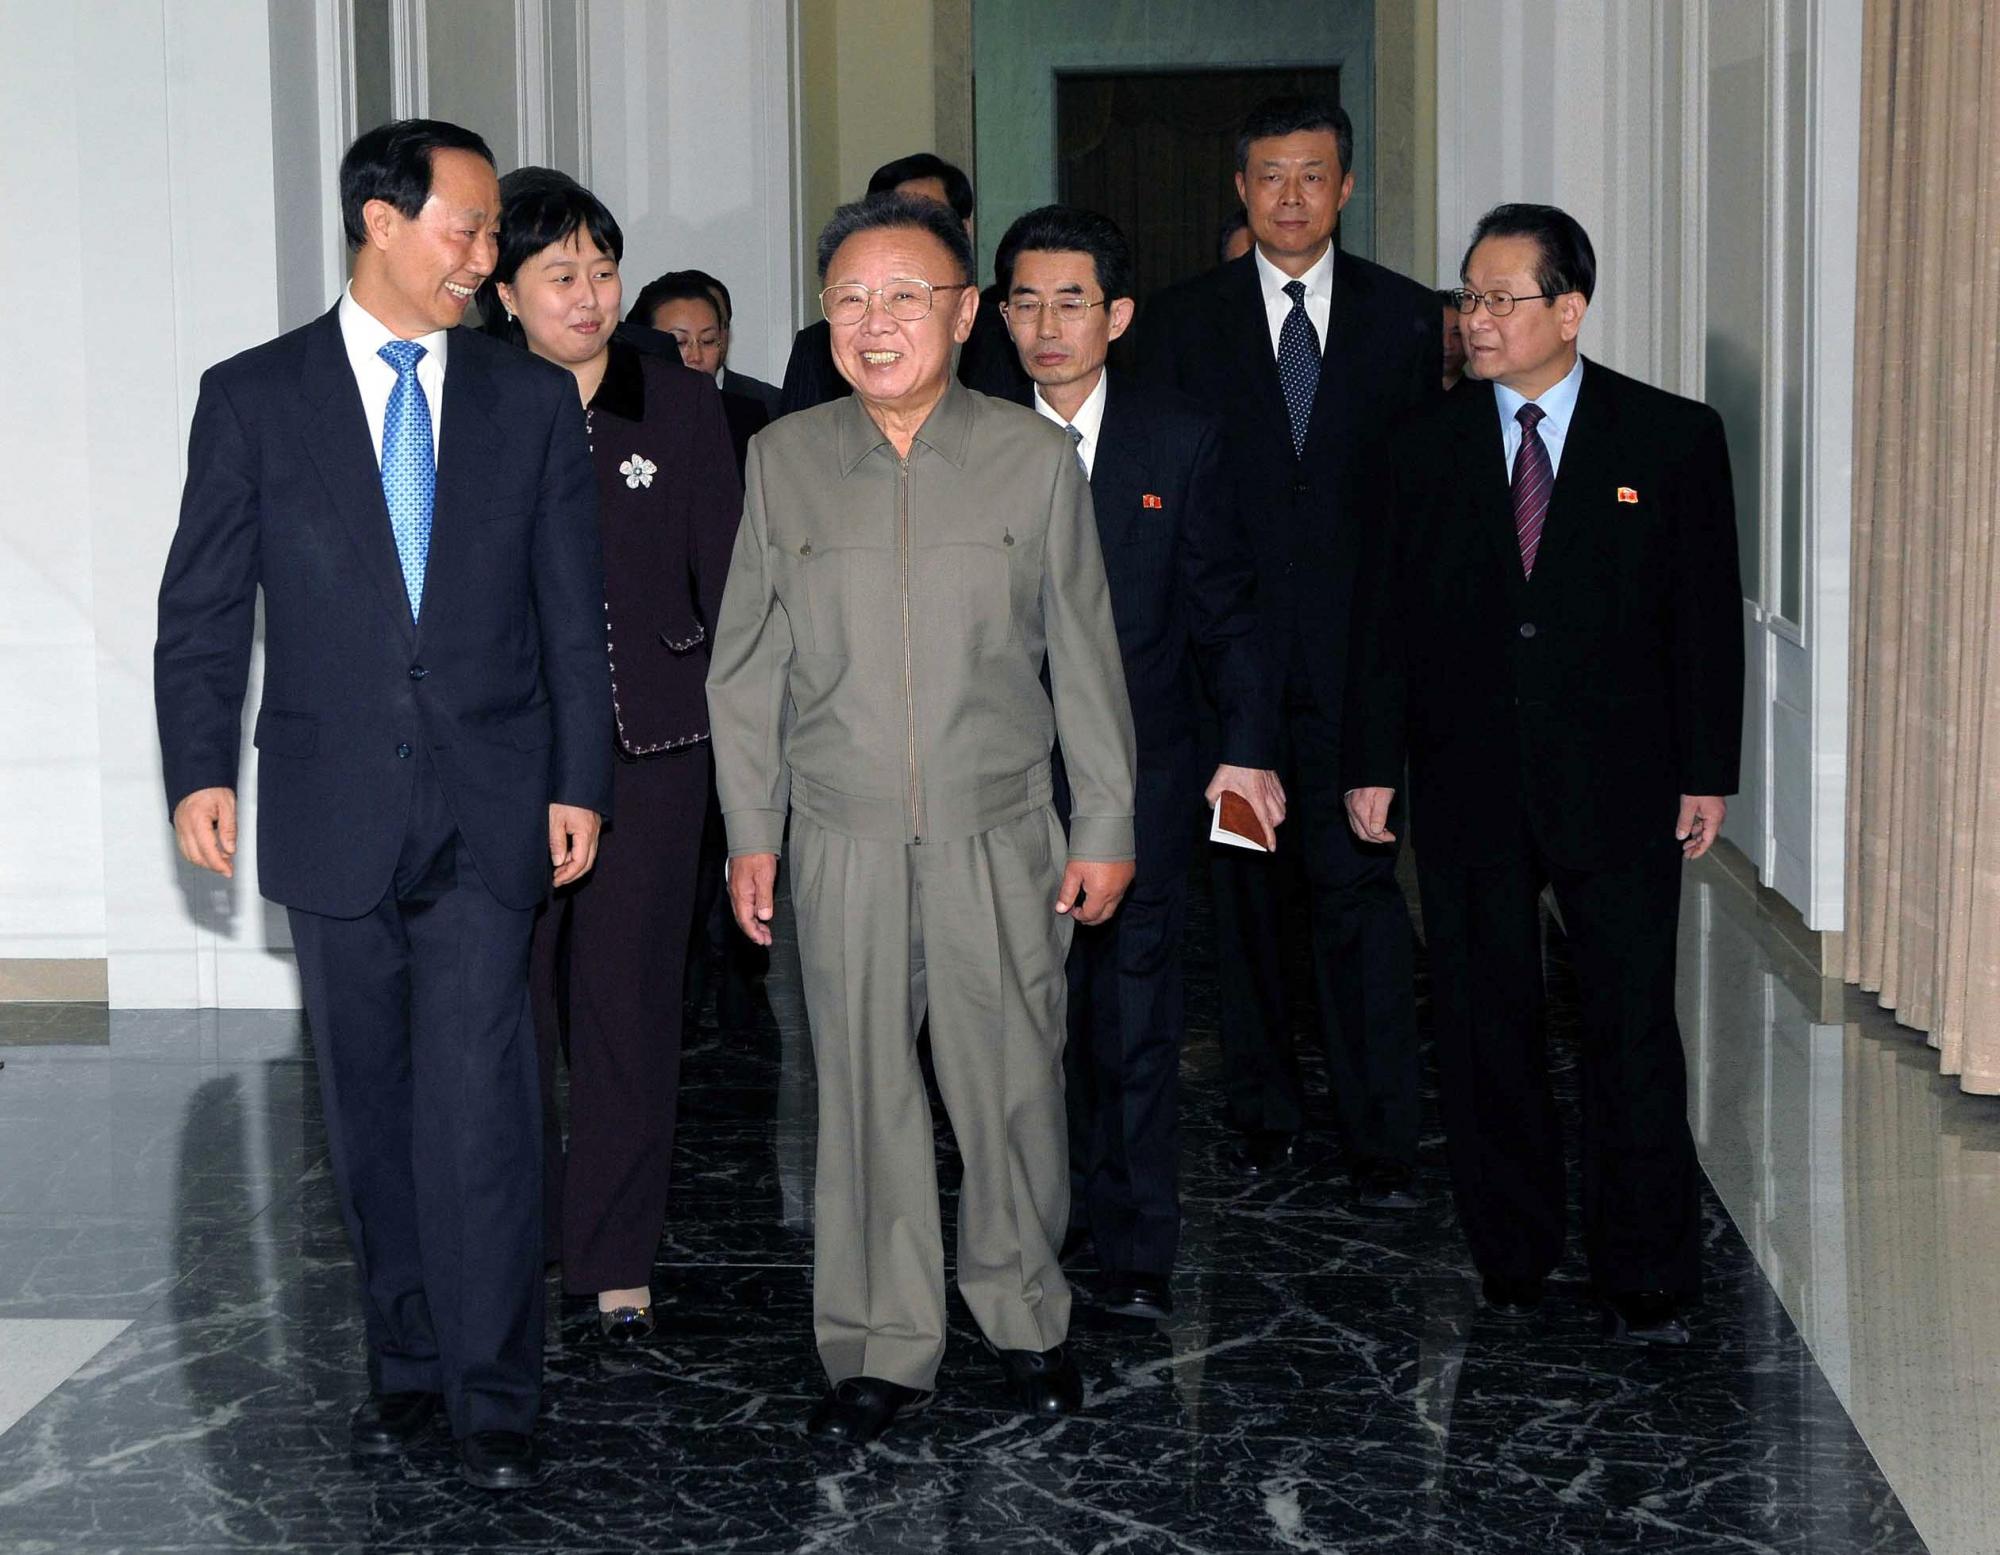 Party liaison head visits DPRK, meets Kim